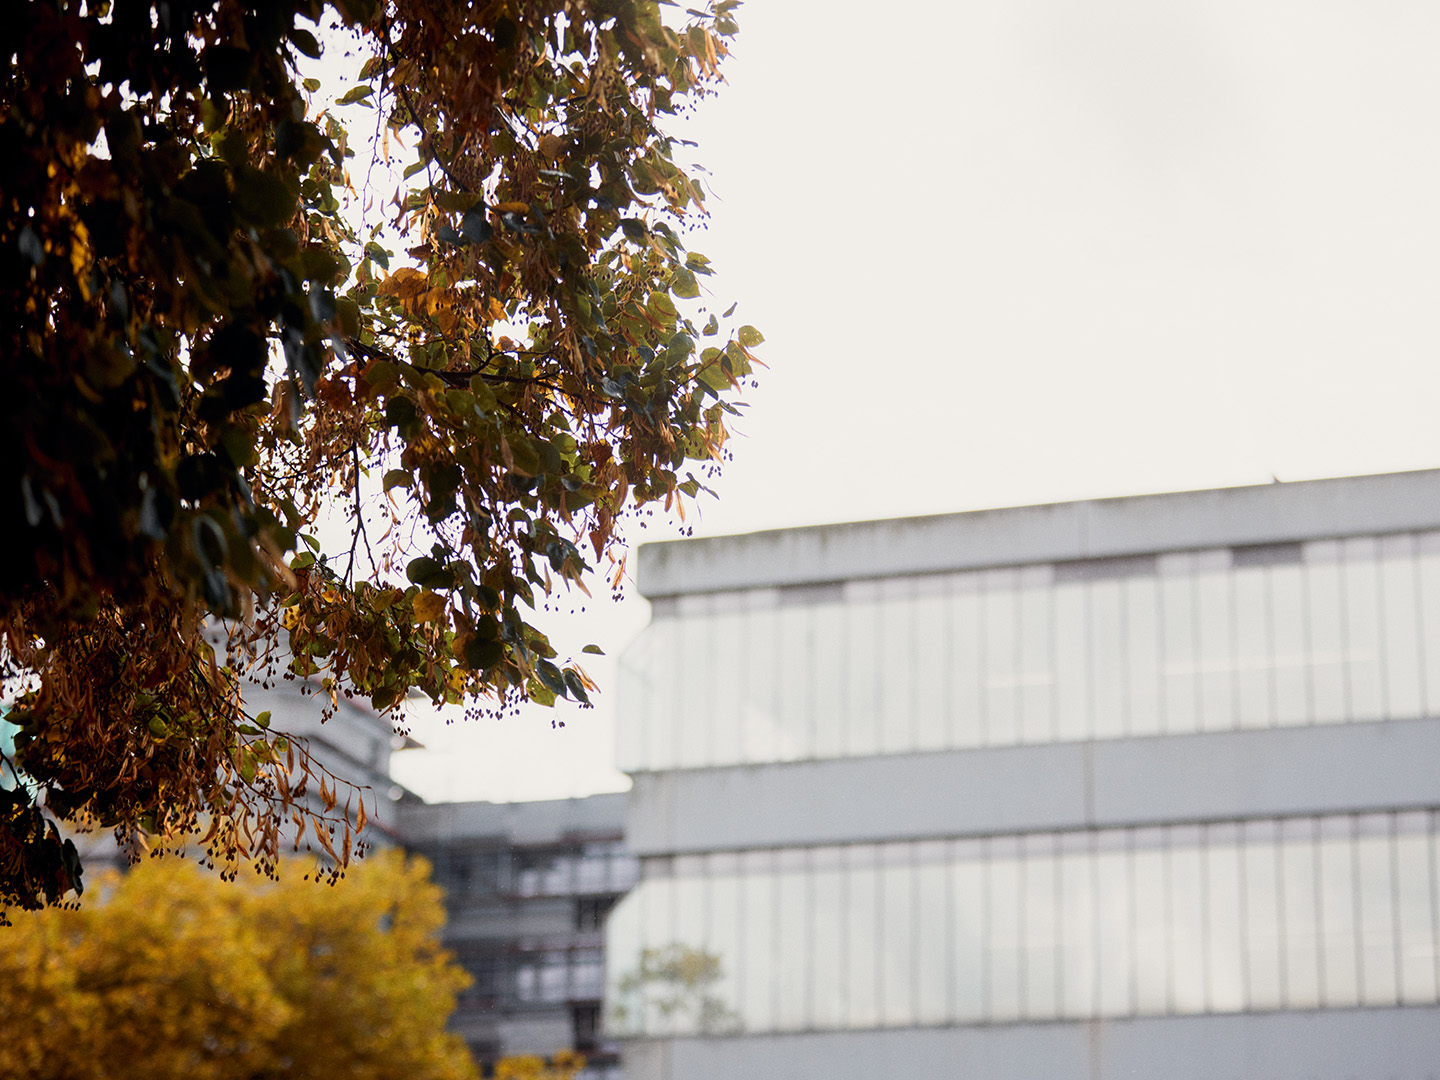 Uni im Hintergrund, im Vordergrund dre Ast von einem Baum im Herbst